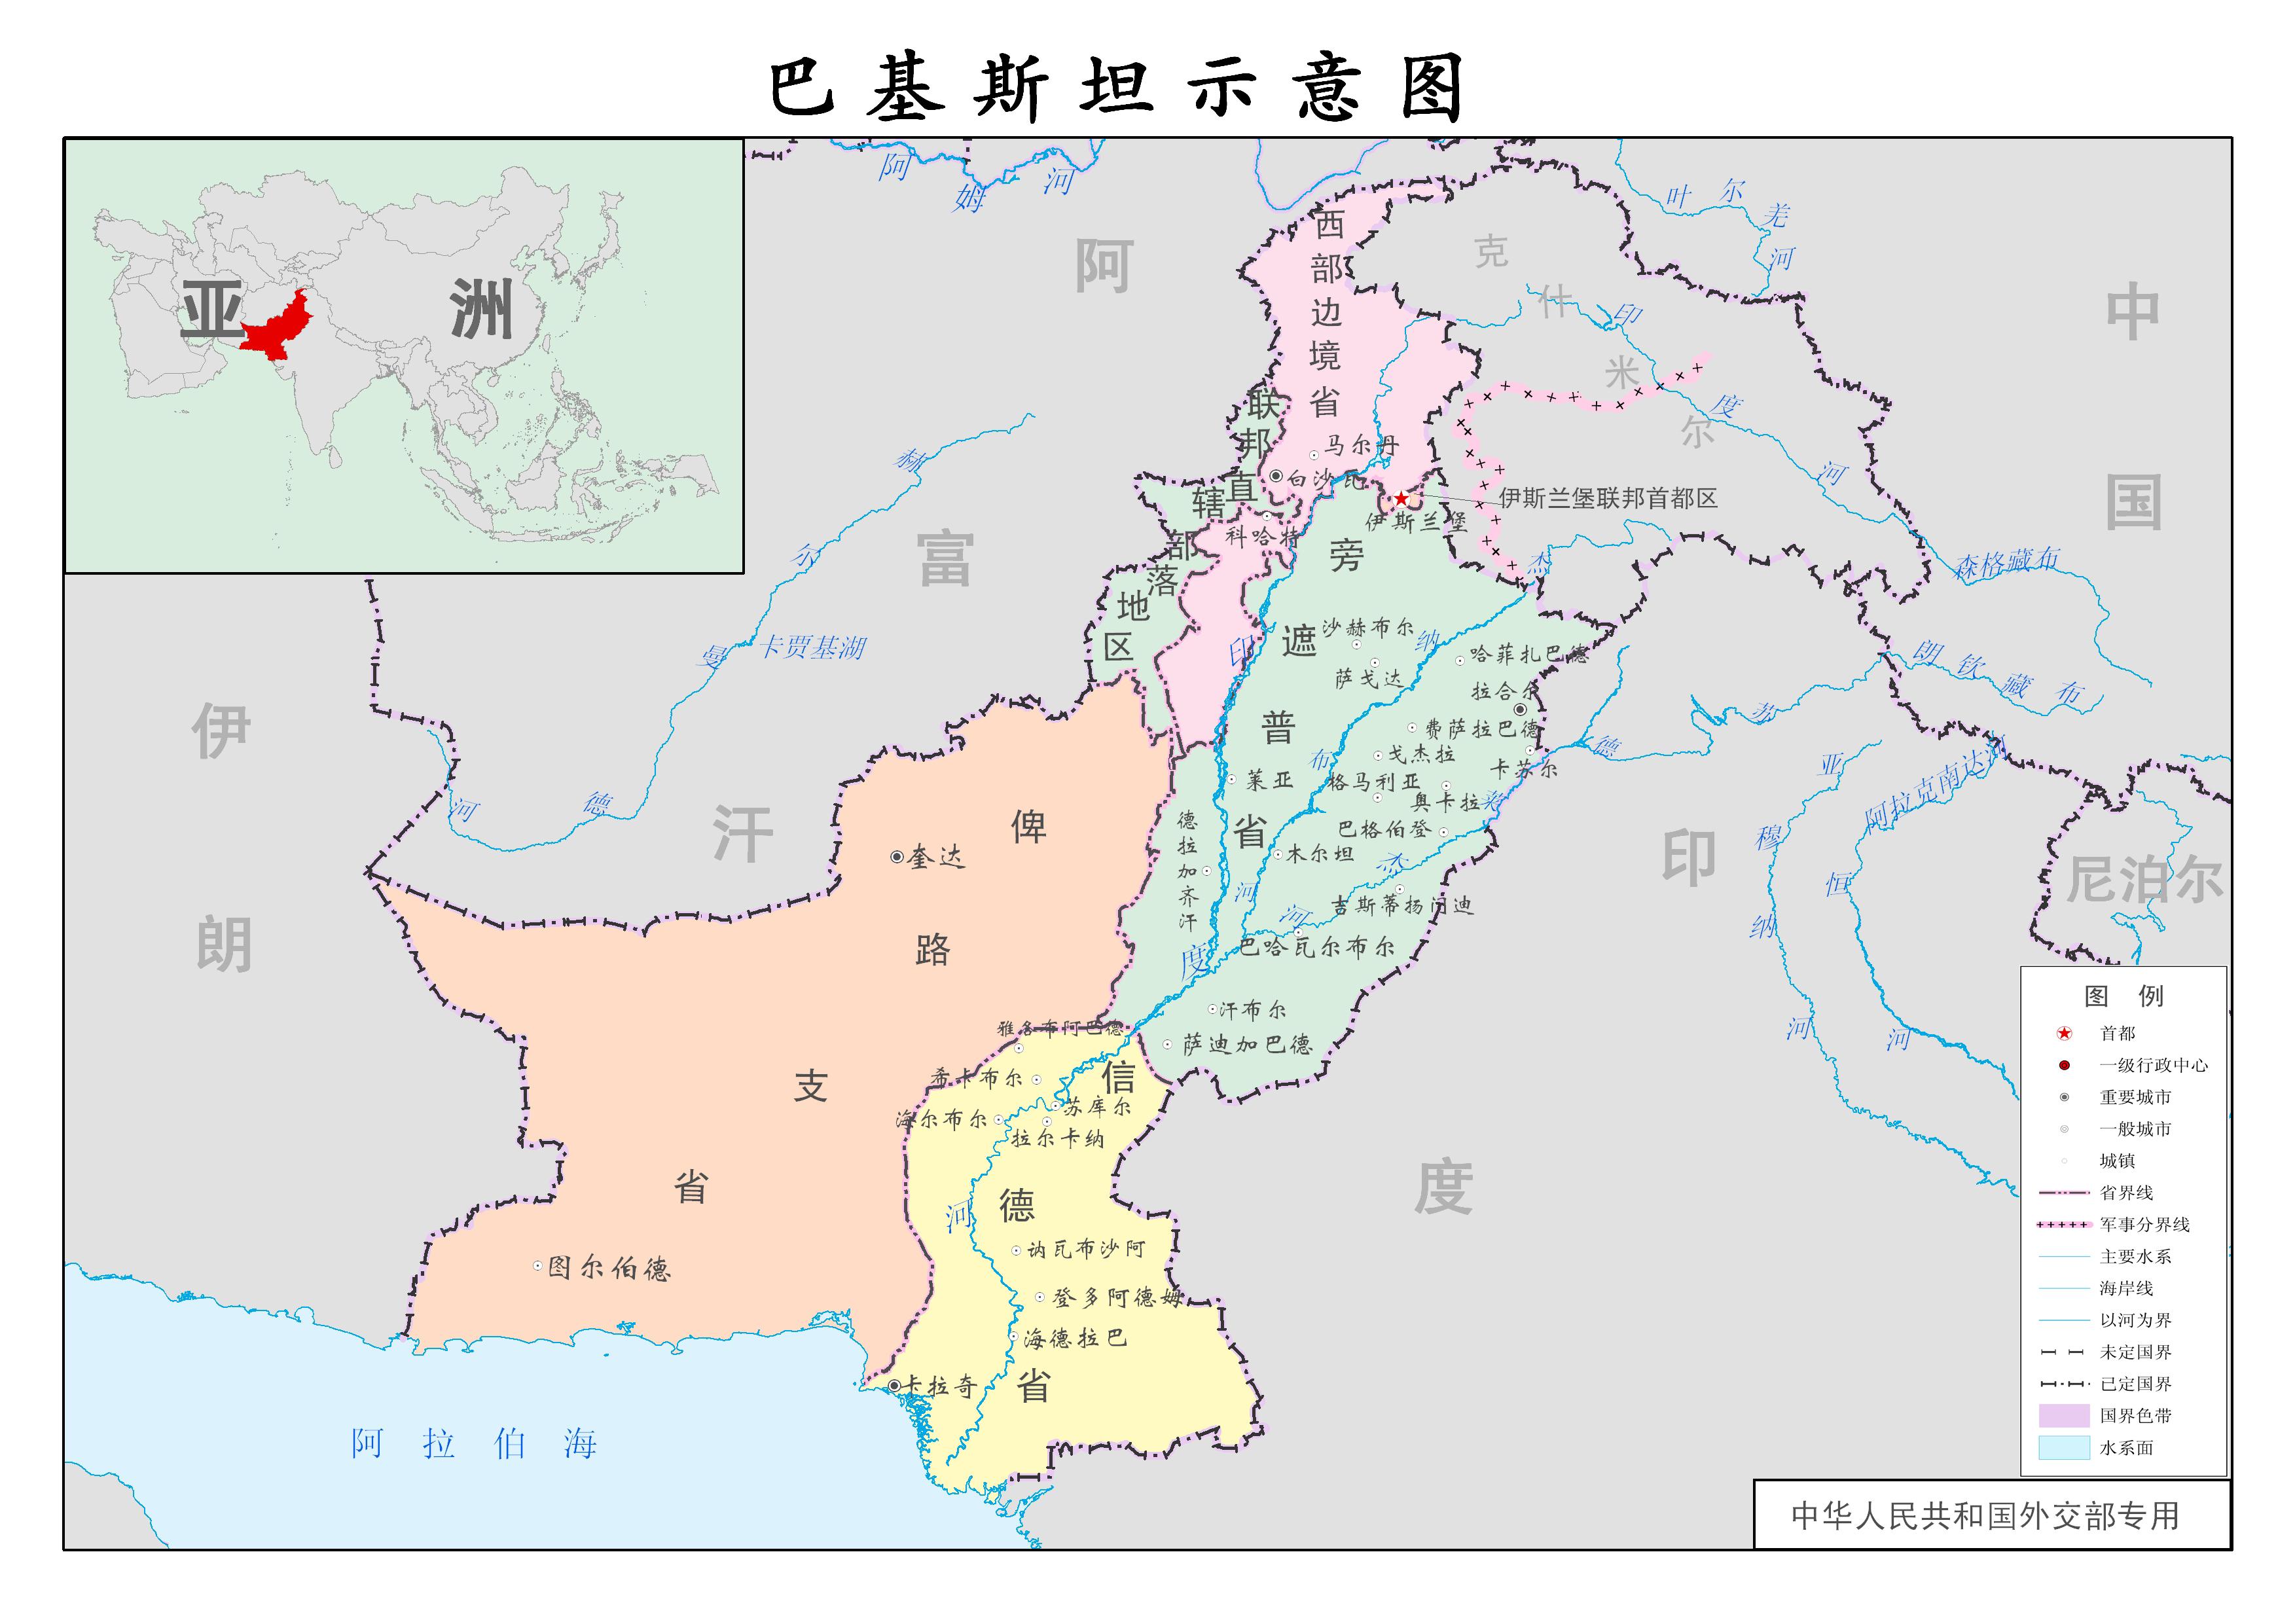 原来巴基斯坦与中国的边境线几乎不接壤的?